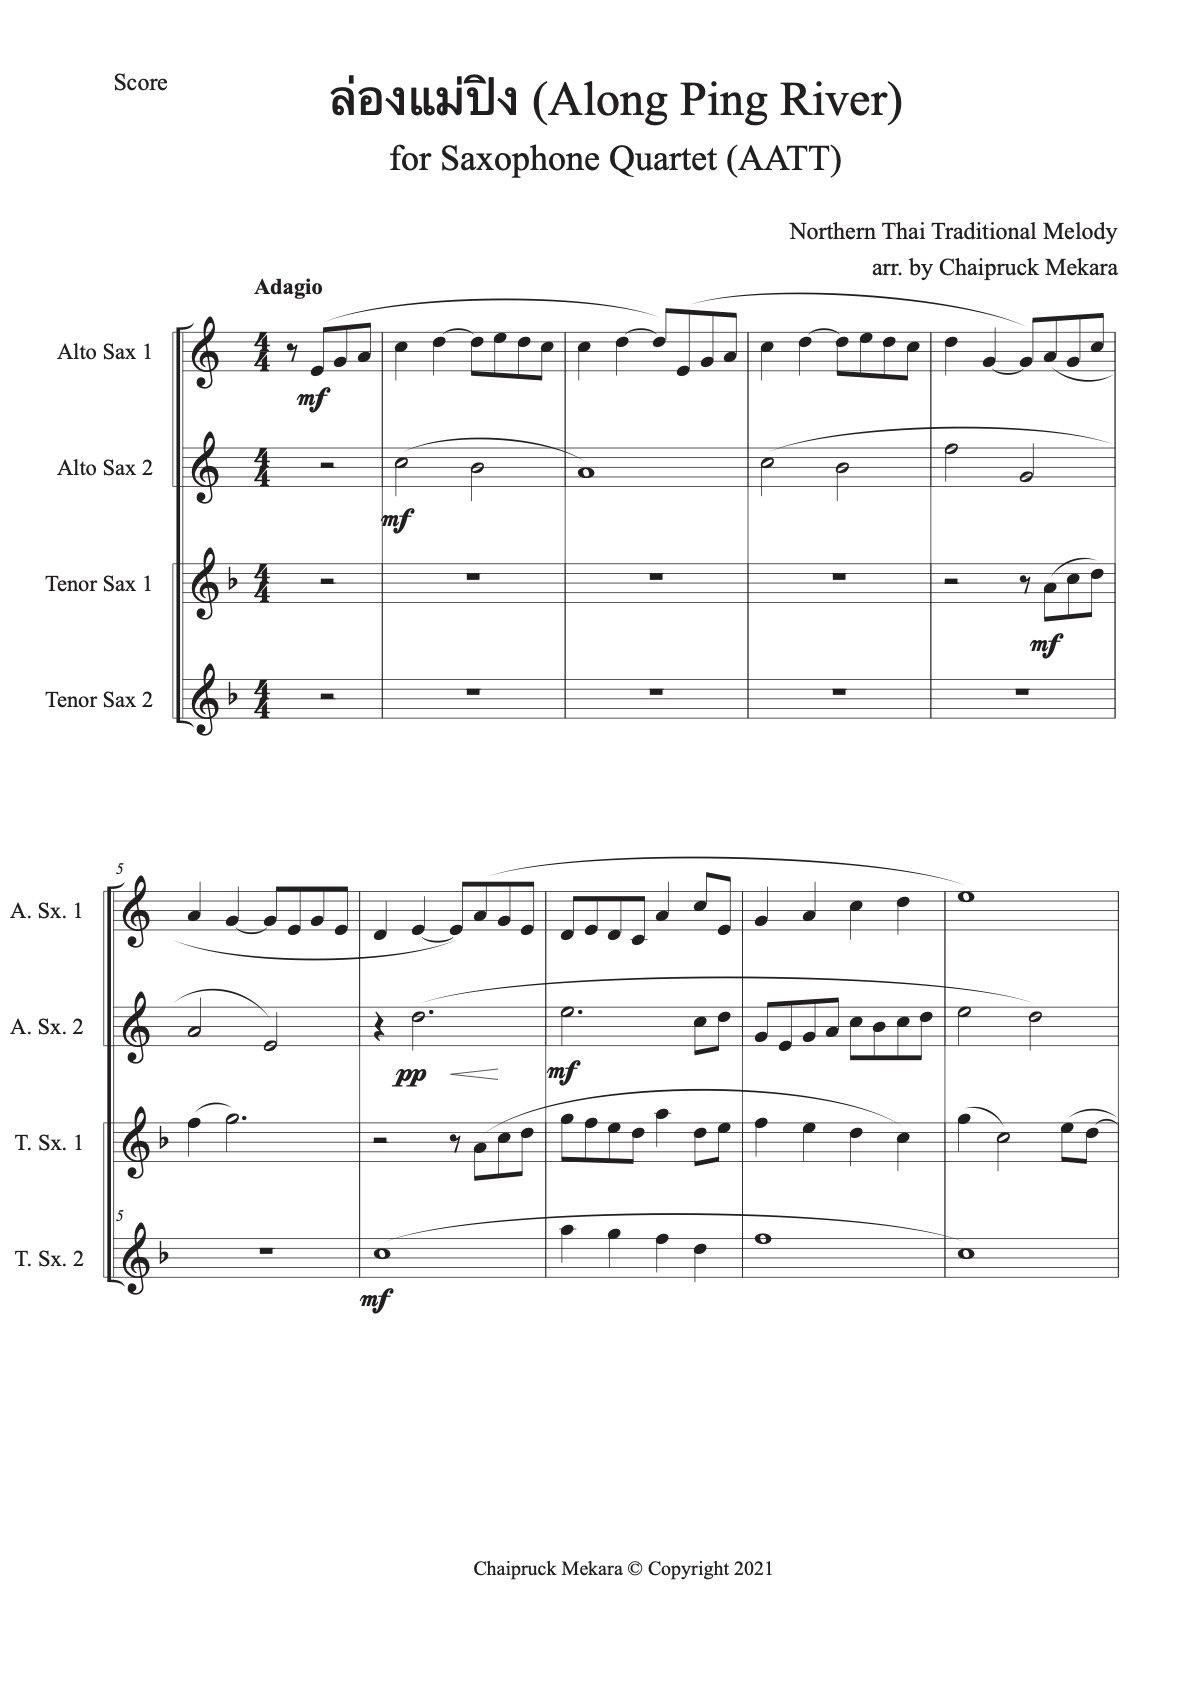 Saxophone Quartet sheet music - Along Ping River (ล่องแม่ปิง) AATT - ChaipruckMekara